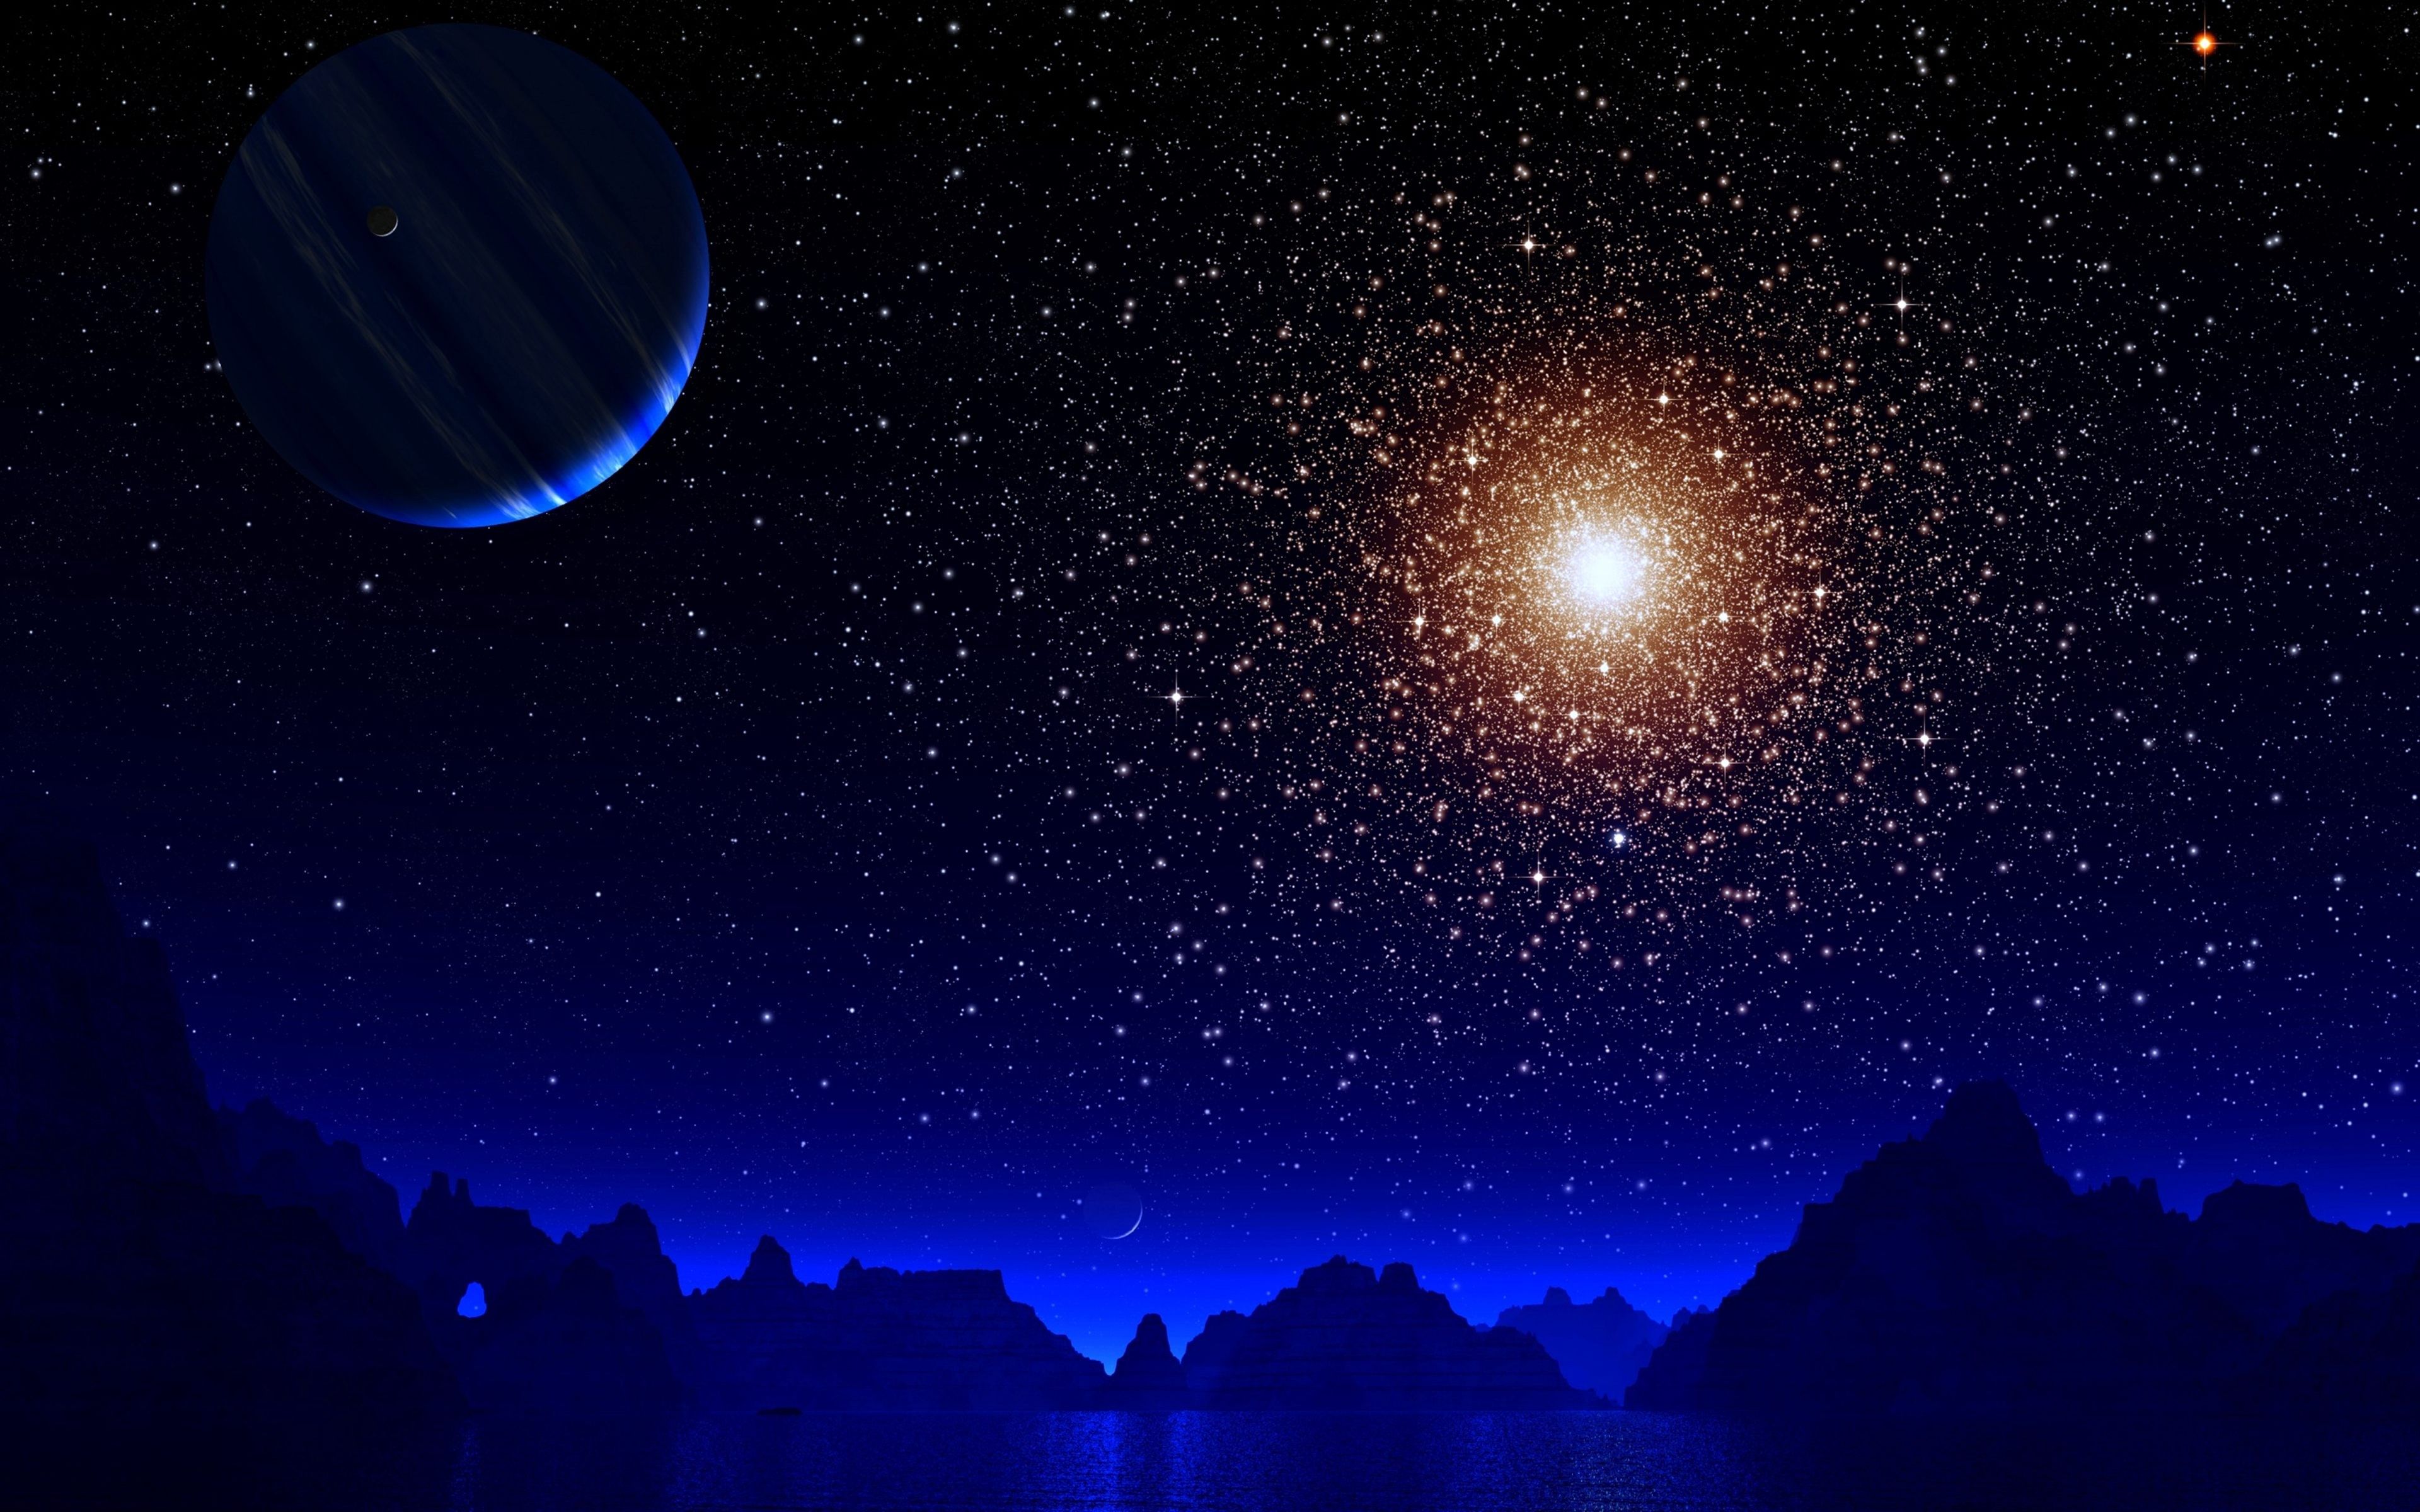 blue night moon and stars 4k ultra HD wallpaper. Wallpaper space, Star wallpaper, Night sky photography